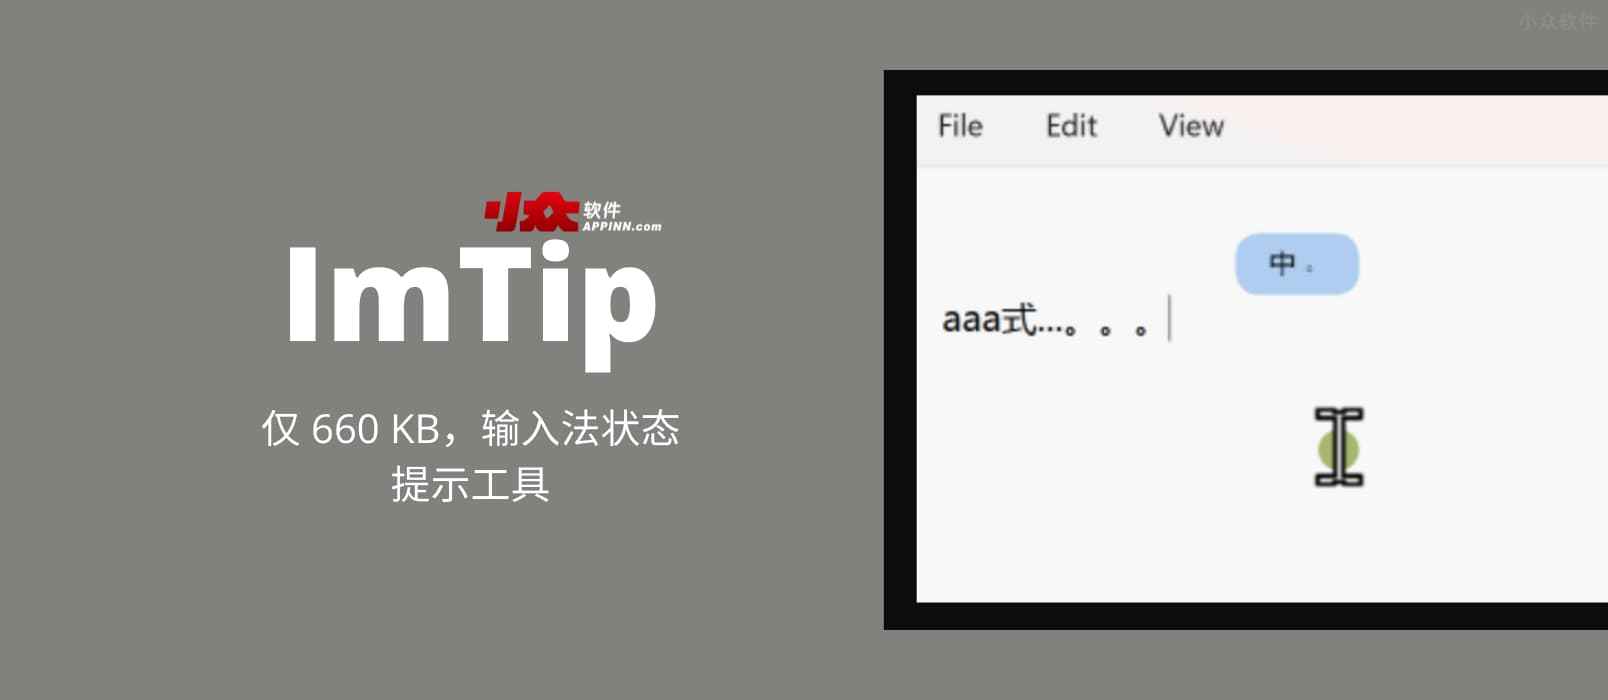 ImTip – 仅 660 KB，输入法状态提示工具[Windows]